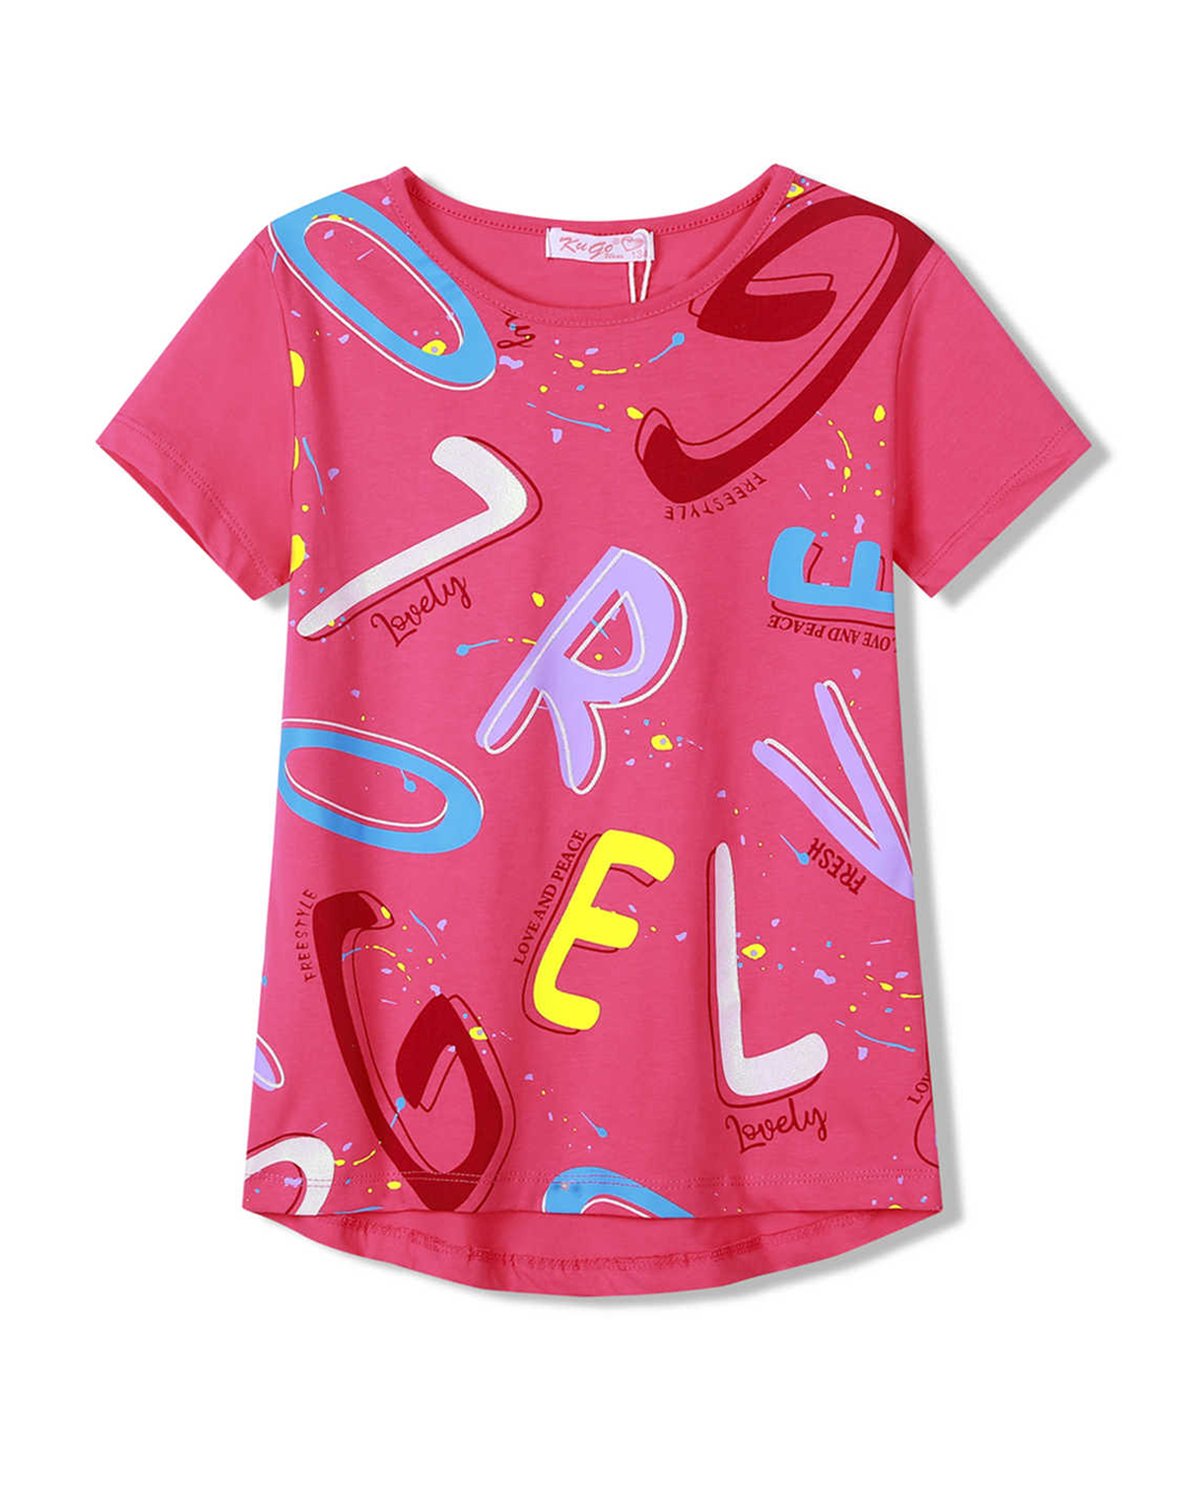 Dívčí tričko - KUGO HC9335, růžová Barva: Růžová, Velikost: 146